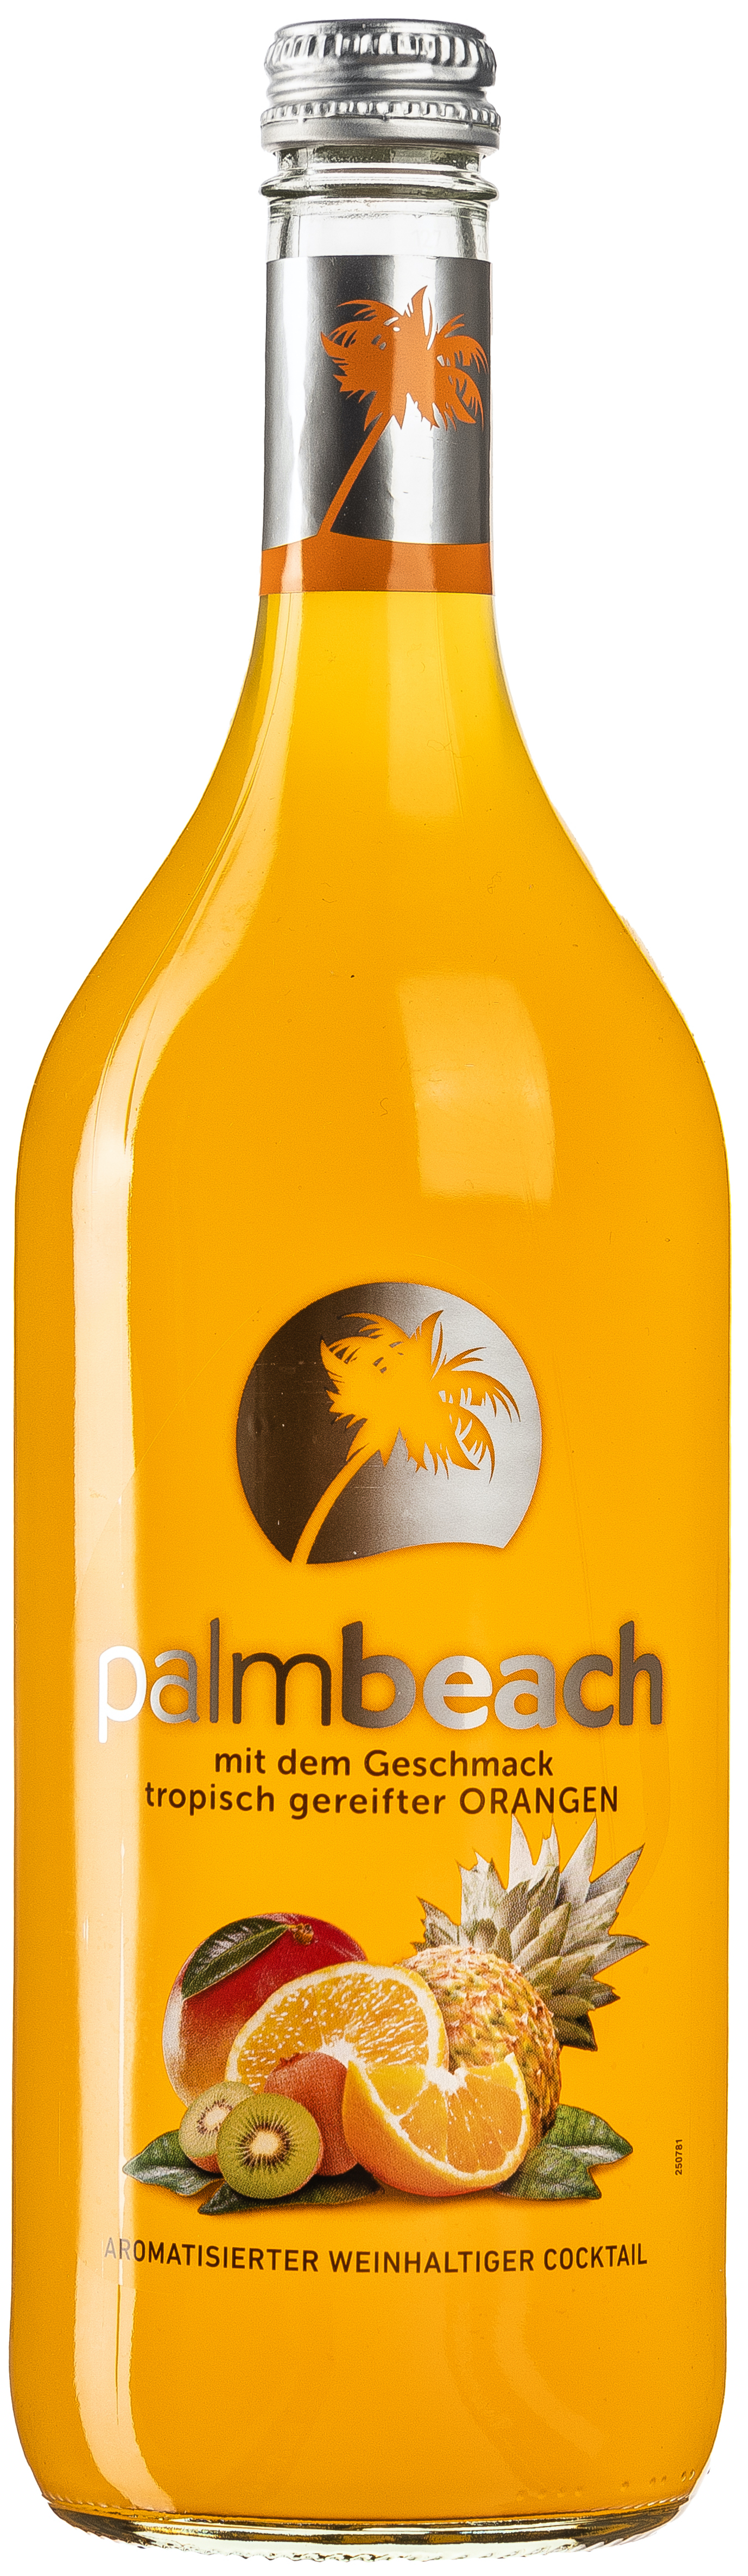 Palm Beach Tropic - Orange 6% vol. 1,0L